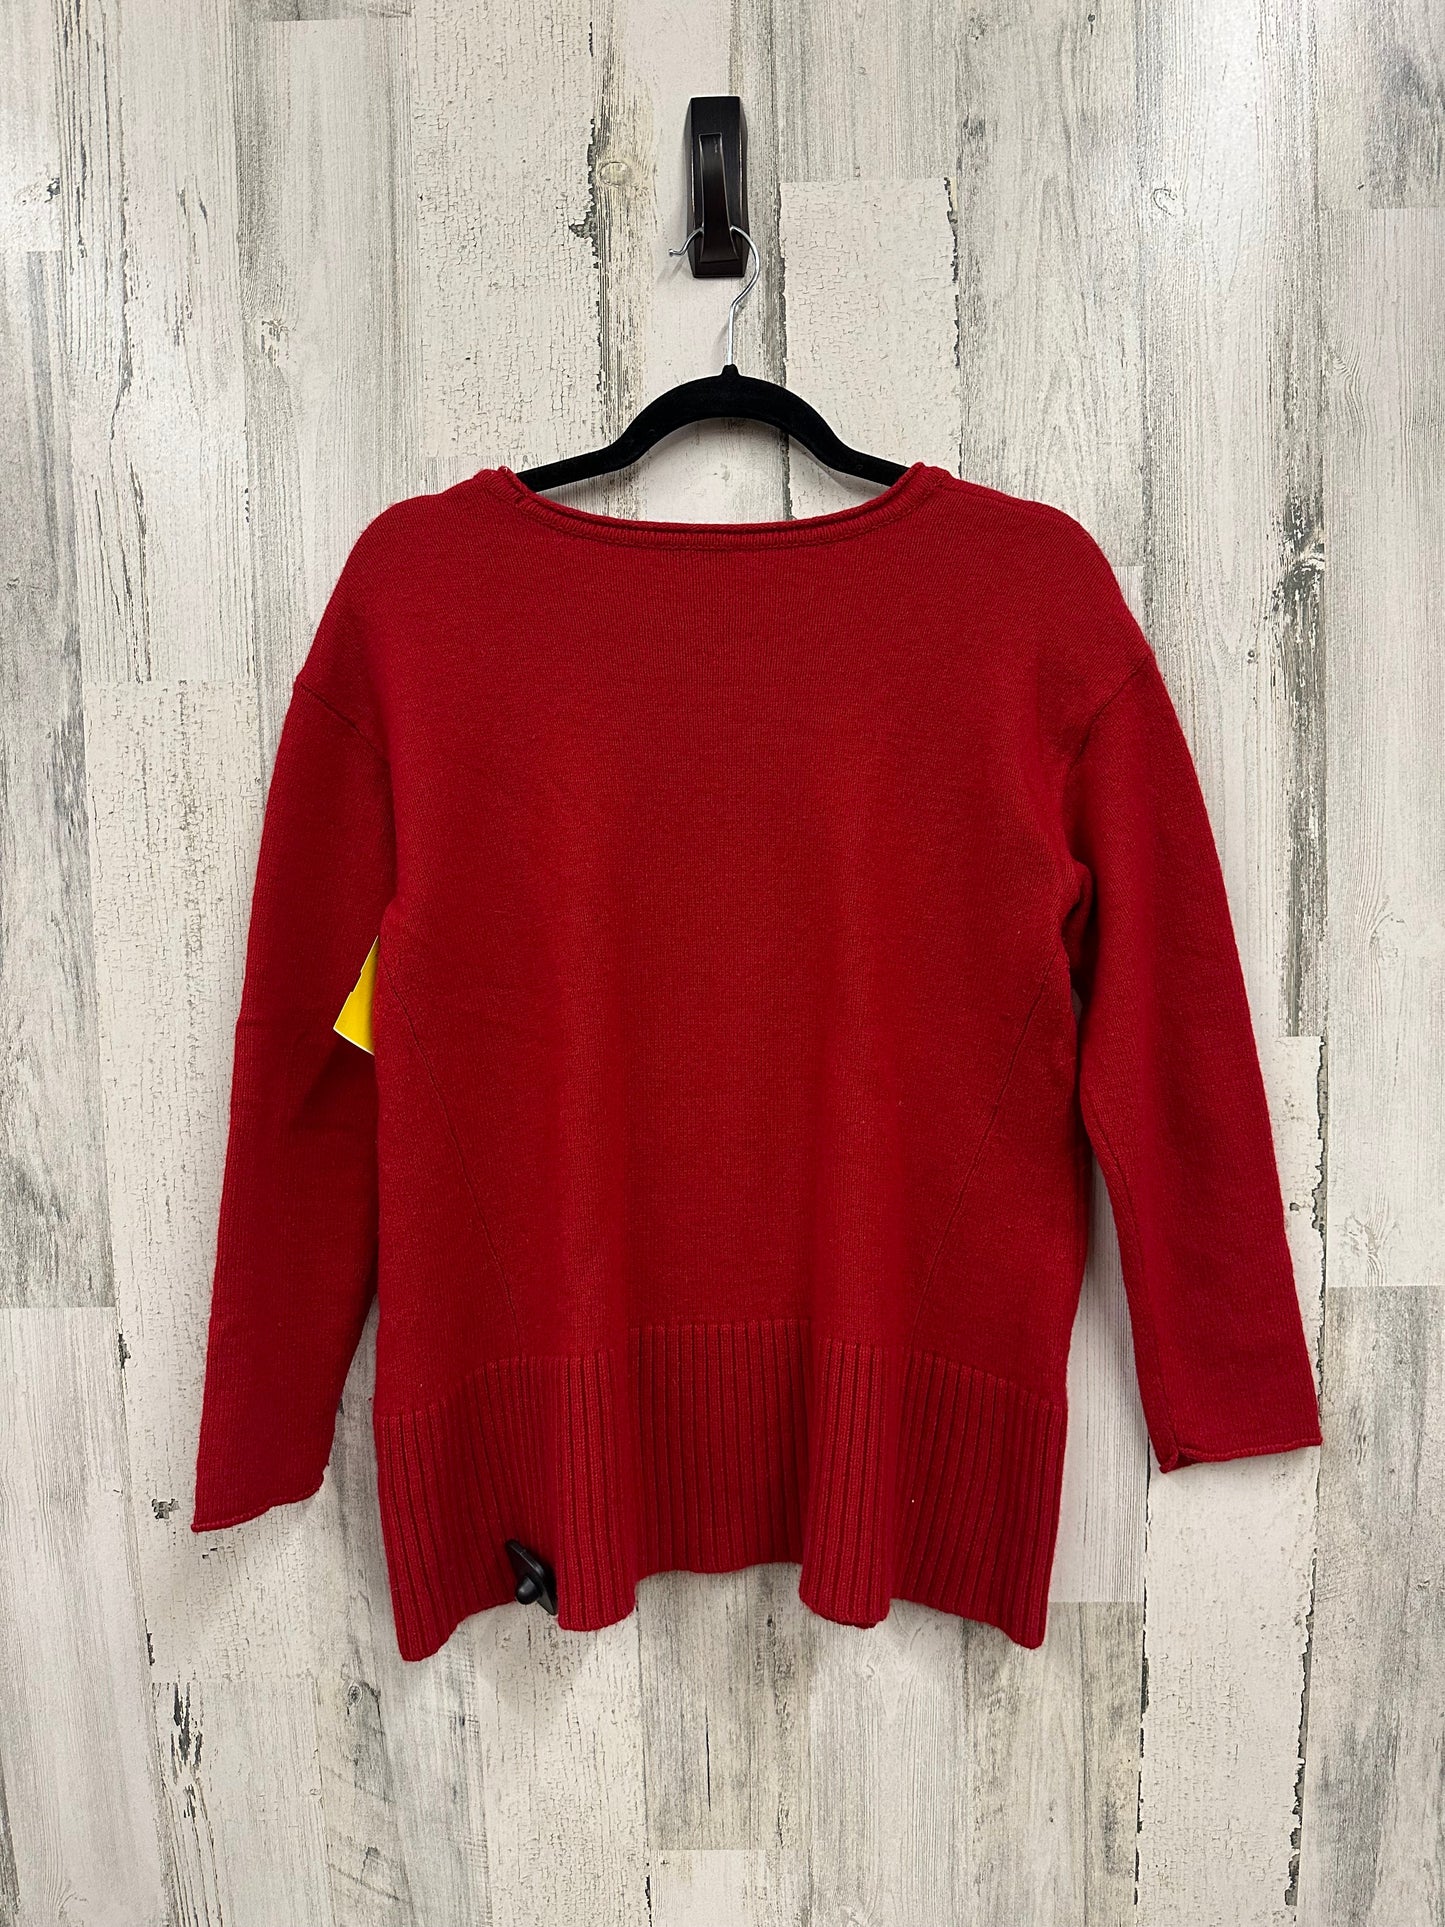 Sweater By J Jill  Size: M